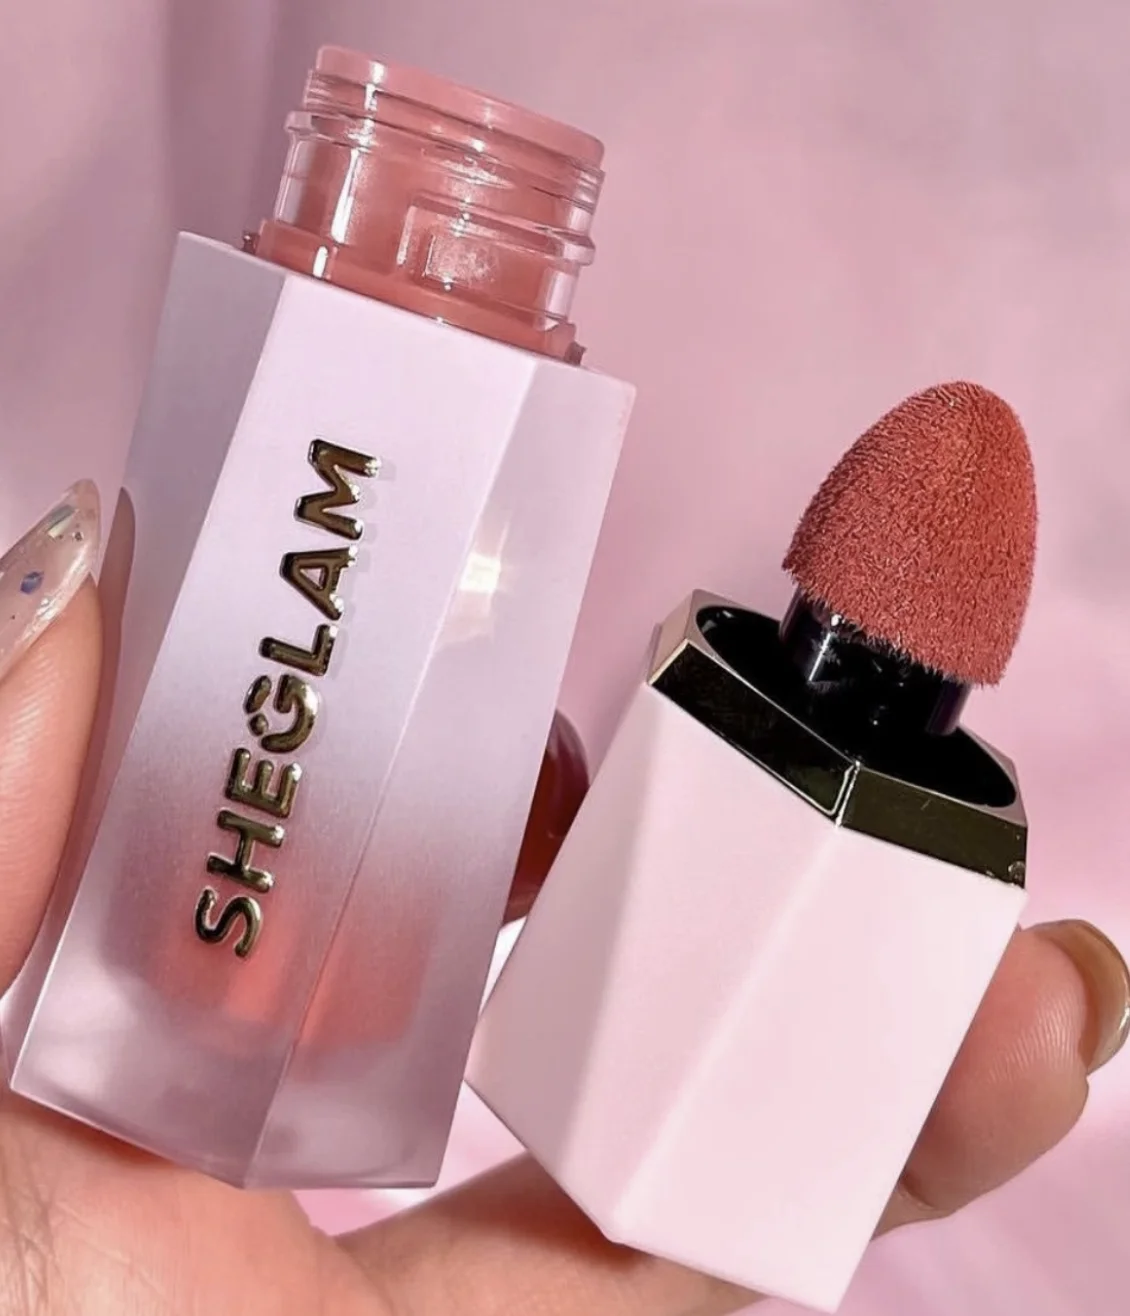 wholesale sheglam make up liquid blush Soft Brush Tip Versatile Facial Nourishing Blush Makeup Blush Cheek Blusher peach